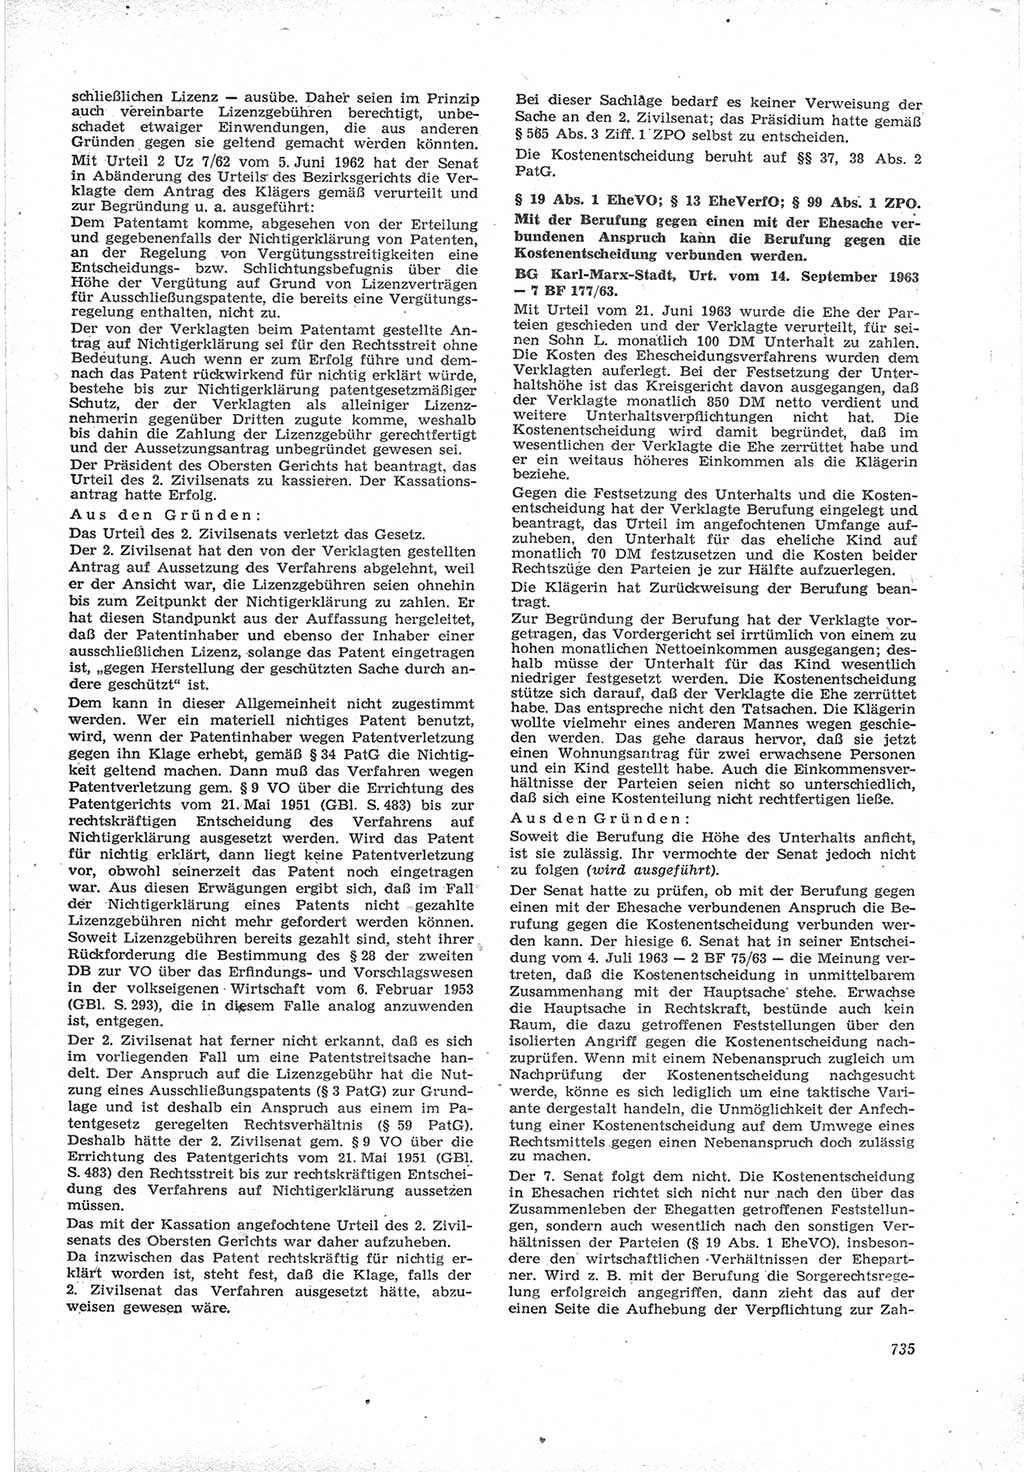 Neue Justiz (NJ), Zeitschrift für Recht und Rechtswissenschaft [Deutsche Demokratische Republik (DDR)], 17. Jahrgang 1963, Seite 735 (NJ DDR 1963, S. 735)